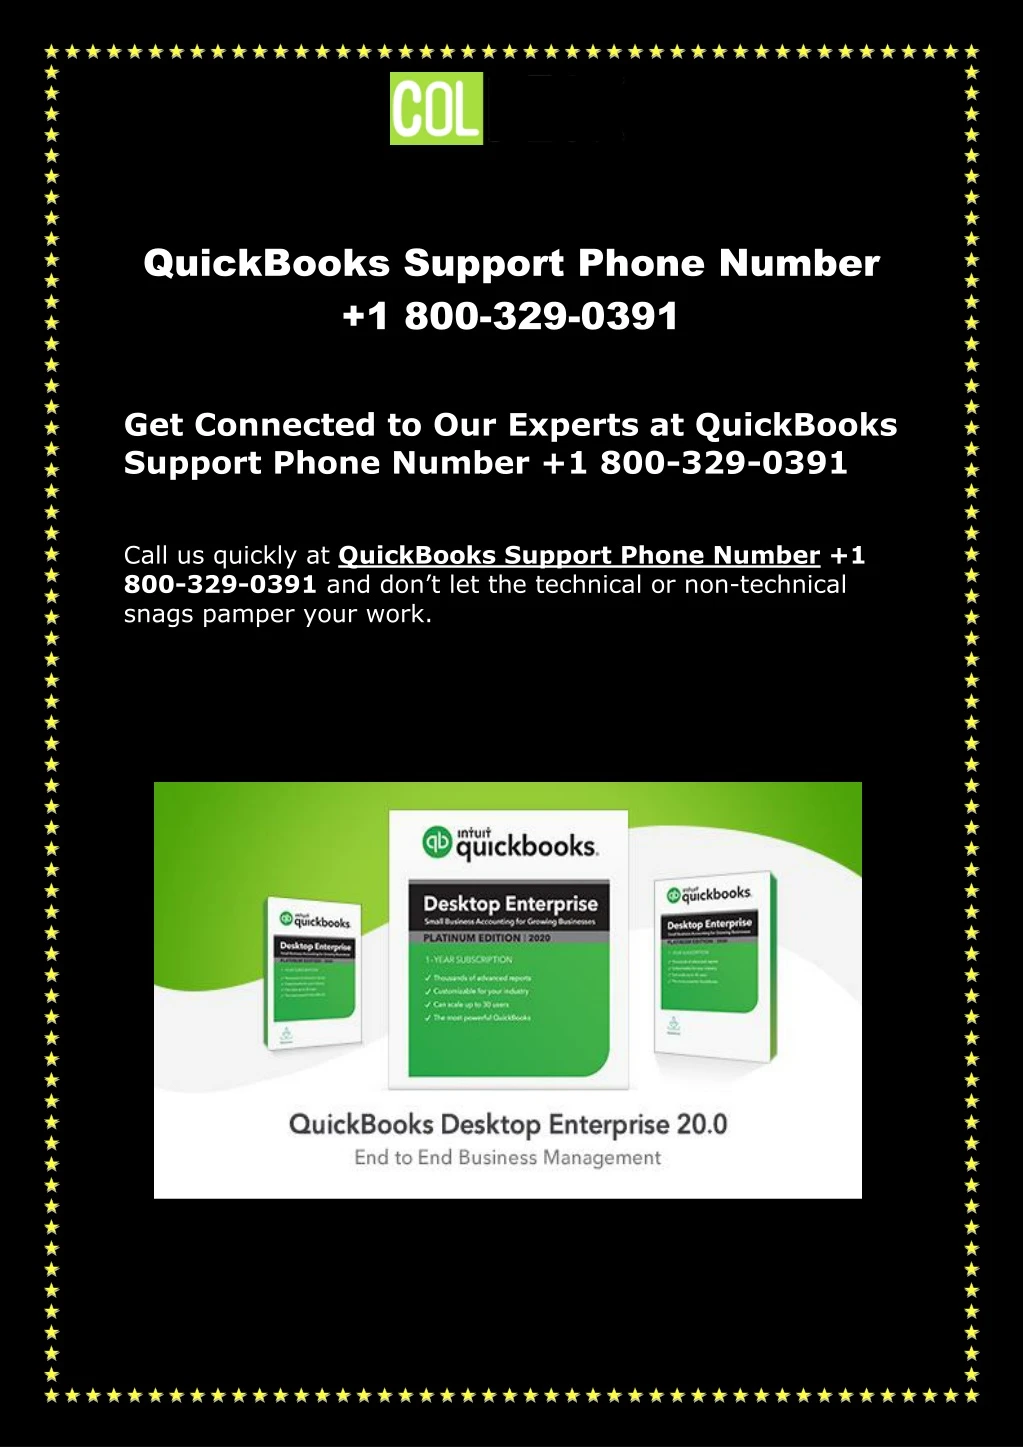 quickbooks support phone number 1 800 329 0391